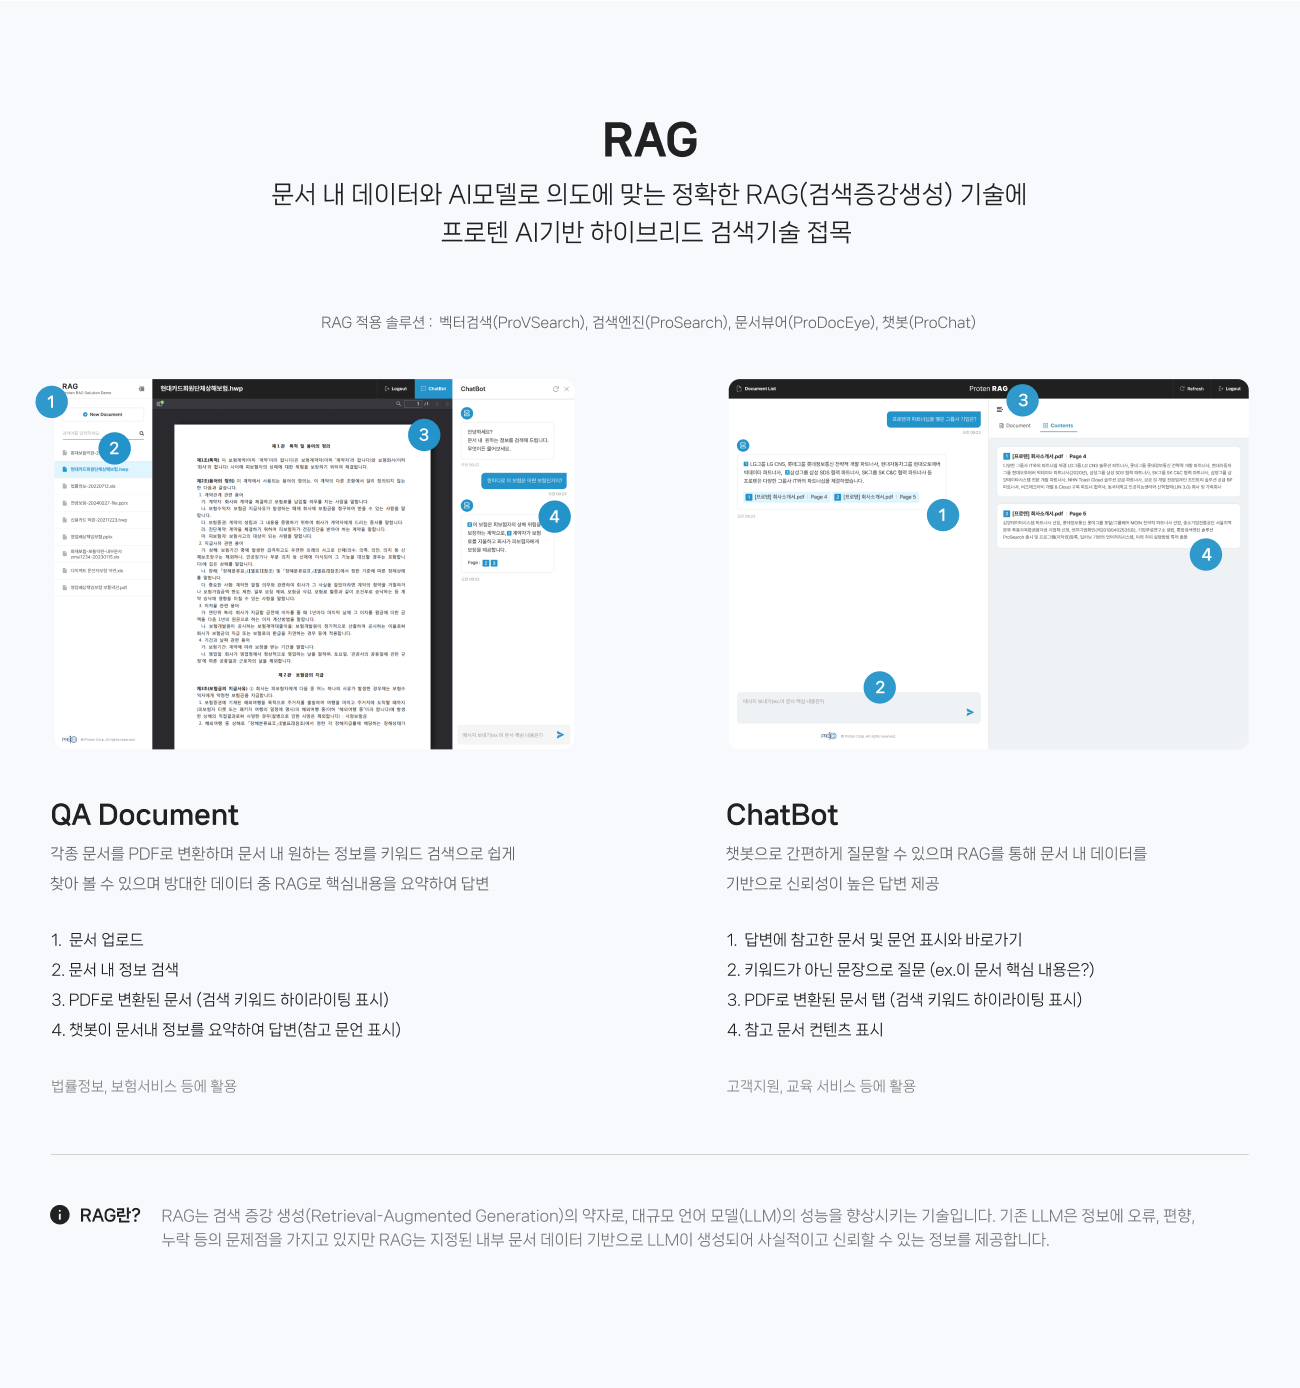 
                RAG : 
                문서 내 데이터와 AI모델로 의도에 맞는 정확한 RAG(검색증강생성) 기술에 
                프로텐 AI기반 하이브리드 검색기술 접목 
                 
                프로텐 RAG 적용 솔루션 :  벡터검색(ProVSearch), 검색엔진(ProSearch), 문서뷰어(ProDocEye), 챗봇(ProChat) 
                
                QA Document : 각종 문서를 PDF로 변환하며 문서 내 원하는 정보를 키워드 검색으로 쉽게 
                찾아 볼 수 있으며 방대한 데이터 중 RAG로 핵심내용을 요약하여 답변  
                
                1. 문서 업로드 
                2. 문서 내 정보 검색 
                3. PDF로 변환된 문서 (검색 키워드 하이라이팅 표시)
                4. 챗봇이 문서내 정보를 요약하여 답변(참고 문언 표시) 
                
                법률정보, 보험서비스 등에 활용
                
                
                ChatBot :  
                챗봇으로 간편하게 질문할 수 있으며 RAG를 통해 문서 내 데이터를
                기반으로 신뢰성이 높은 답변 제공   
                
                1.  답변에 참고한 문서 및 문언 표시와 바로가기 
                2. 키워드가 아닌 문장으로 질문 (ex.이 문서 핵심 내용은?)
                3. PDF로 변환된 문서 탭 (검색 키워드 하이라이팅 표시)
                4. 참고 문서 컨텐츠 표시 
                
                고객지원, 교육 서비스 등에 활용 

                RAG란? : RAG는 검색 증강 생성(Retrieval-Augmented Generation)의 약자로, 대규모 언어 모델(LLM)의 성능을 향상시키는 기술입니다. 기존 LLM은 정보에 오류, 편향, 누락 등의 문제점을 가지고 있지만 RAG는 지정된 내부 문서 데이터 기반으로 LLM이 생성되어 사실적이고 신뢰할 수 있는 정보를 제공합니다. 